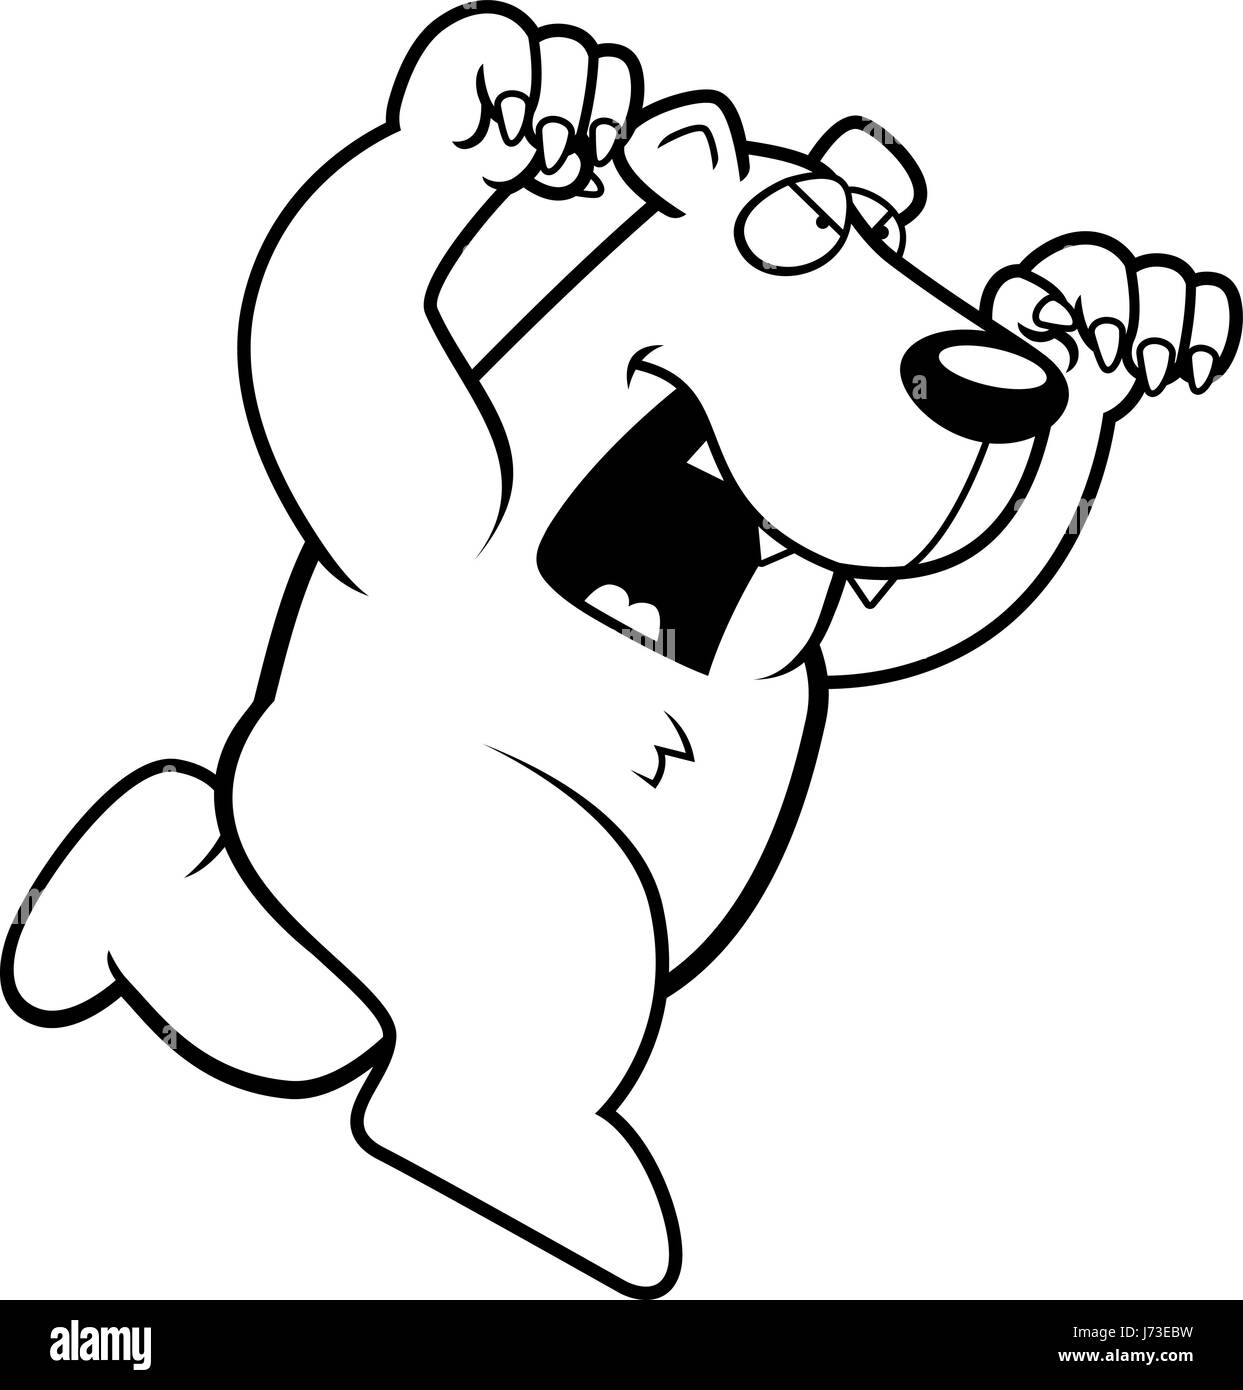 Ein Cartoon Eisbär laufen mit Krallen aus anzugreifen. Stock Vektor